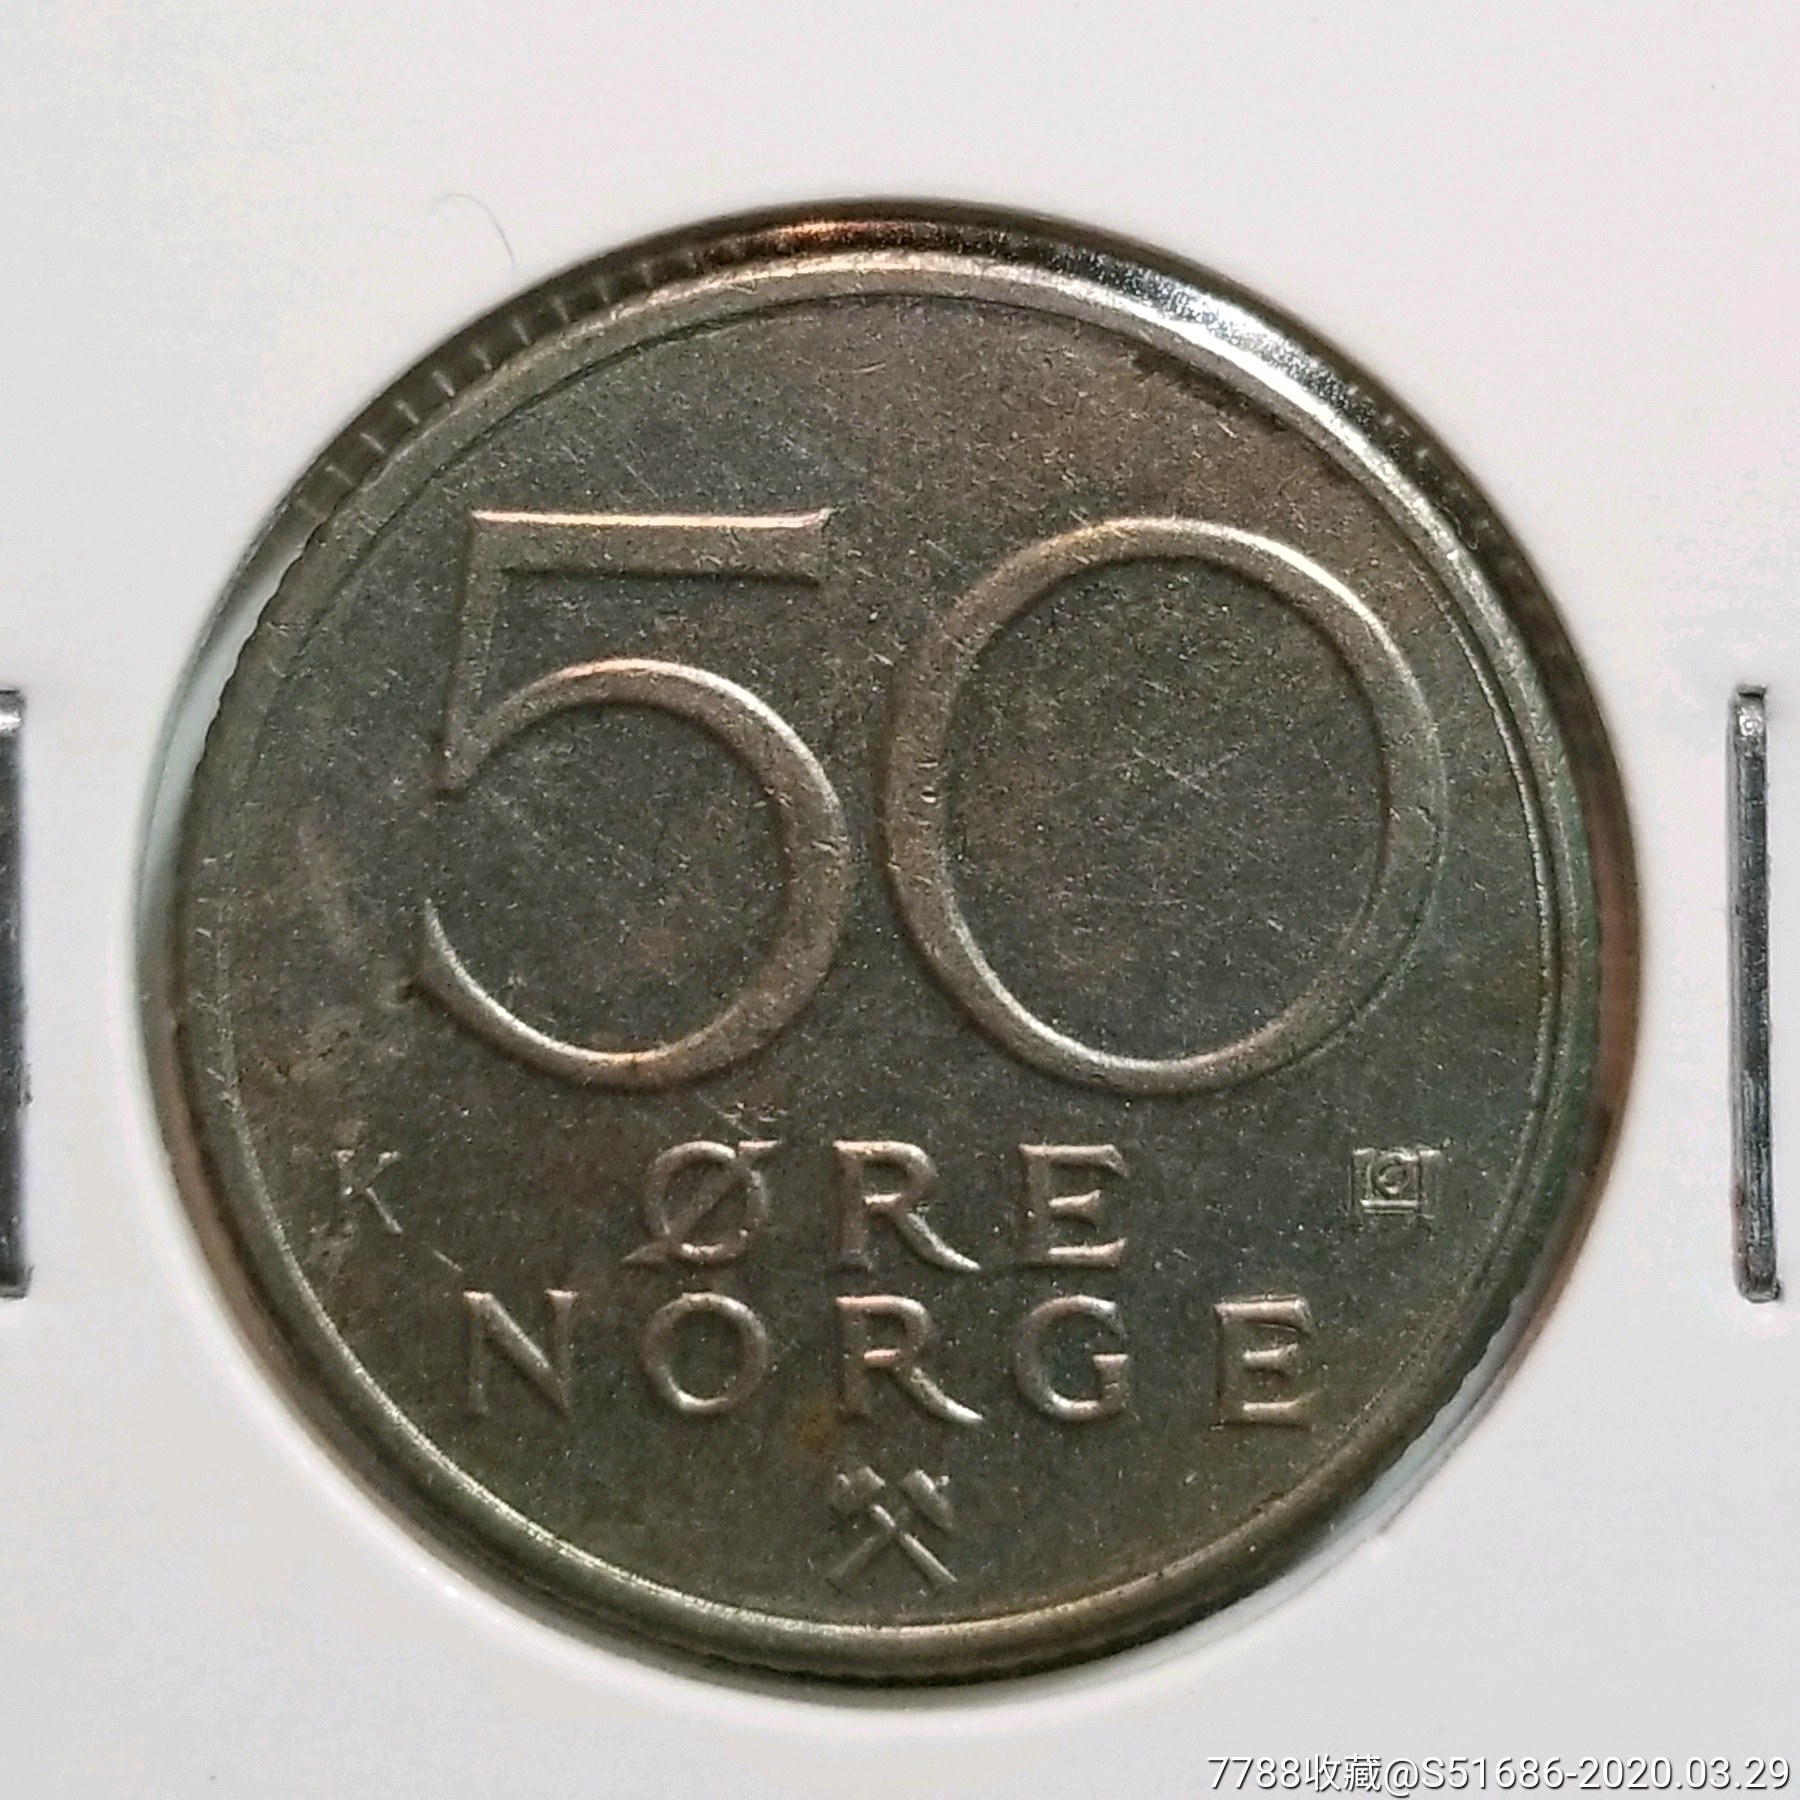 挪威握斧狮50欧尔